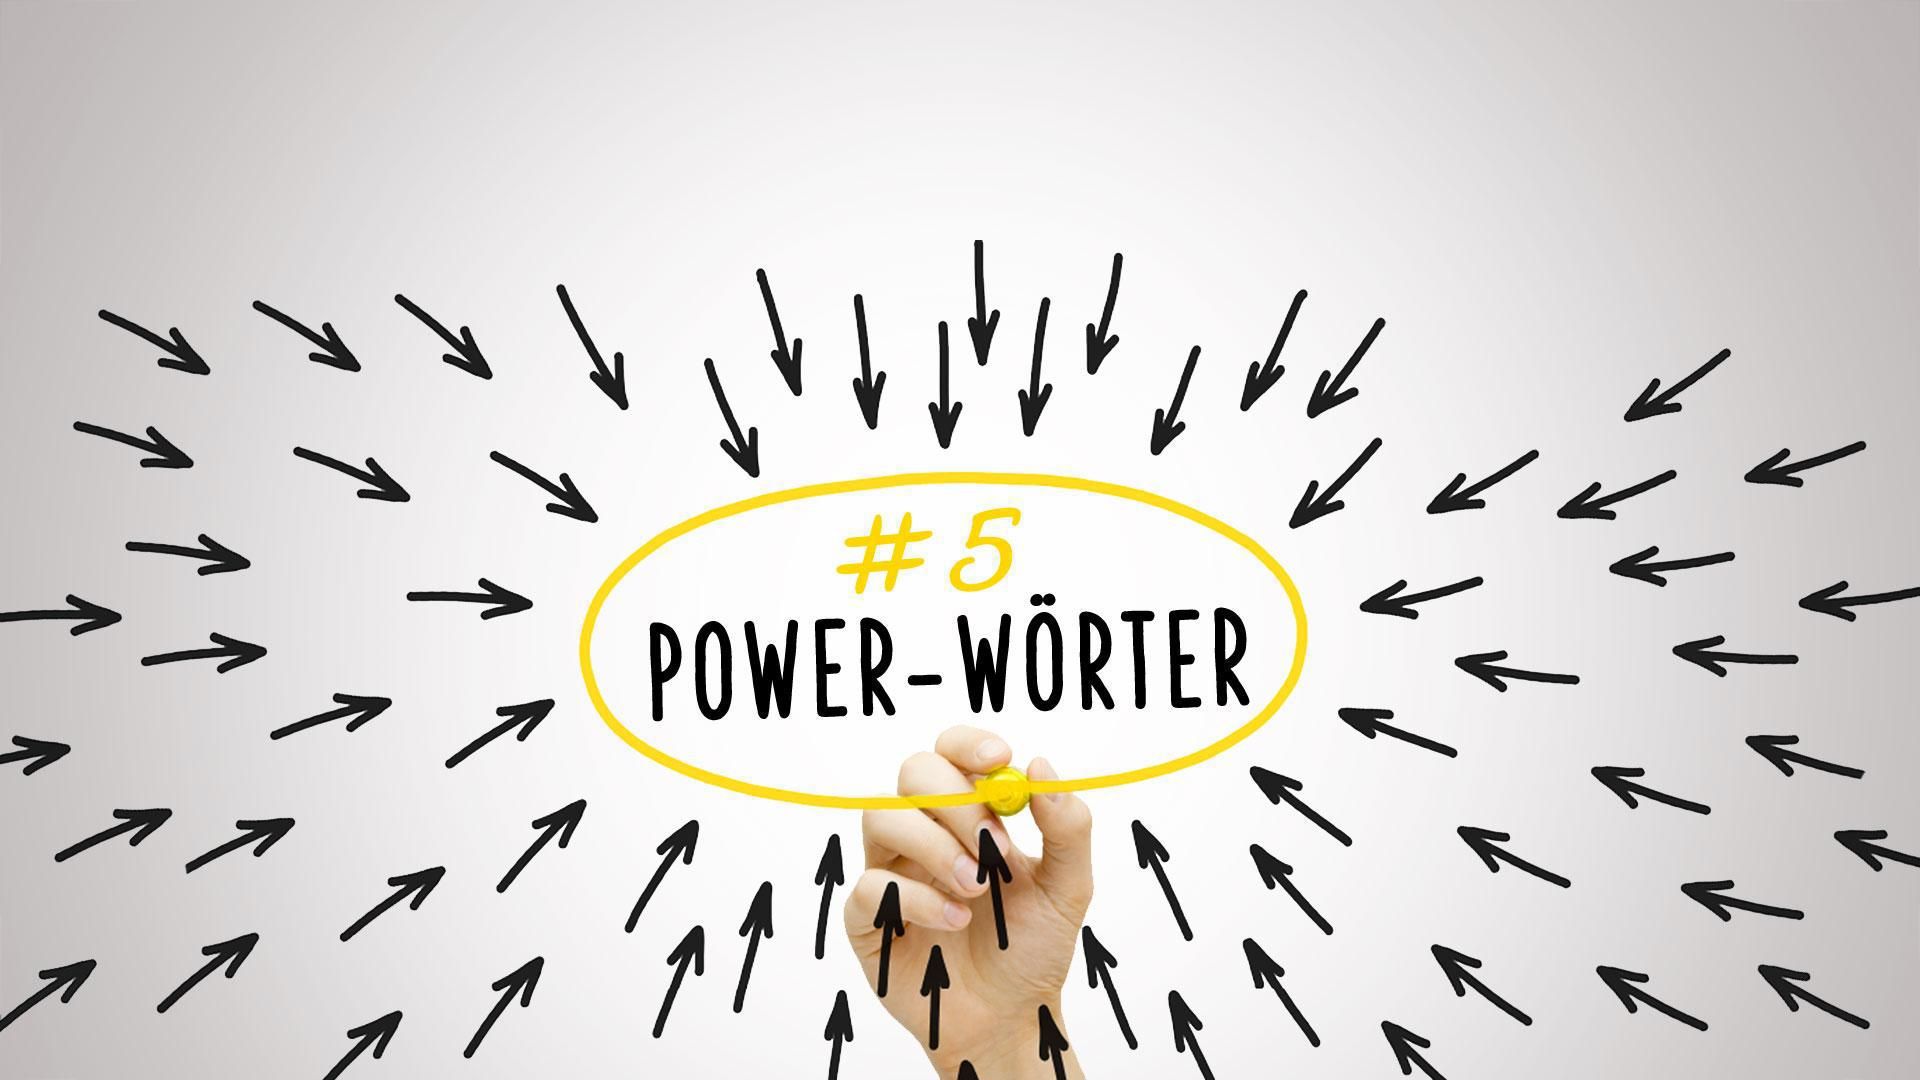 jkt-powerwoerter5_copy Verkauf To Go - Sprachmodelle beherrschen mit Power Wörter Teil 5-Master-Level